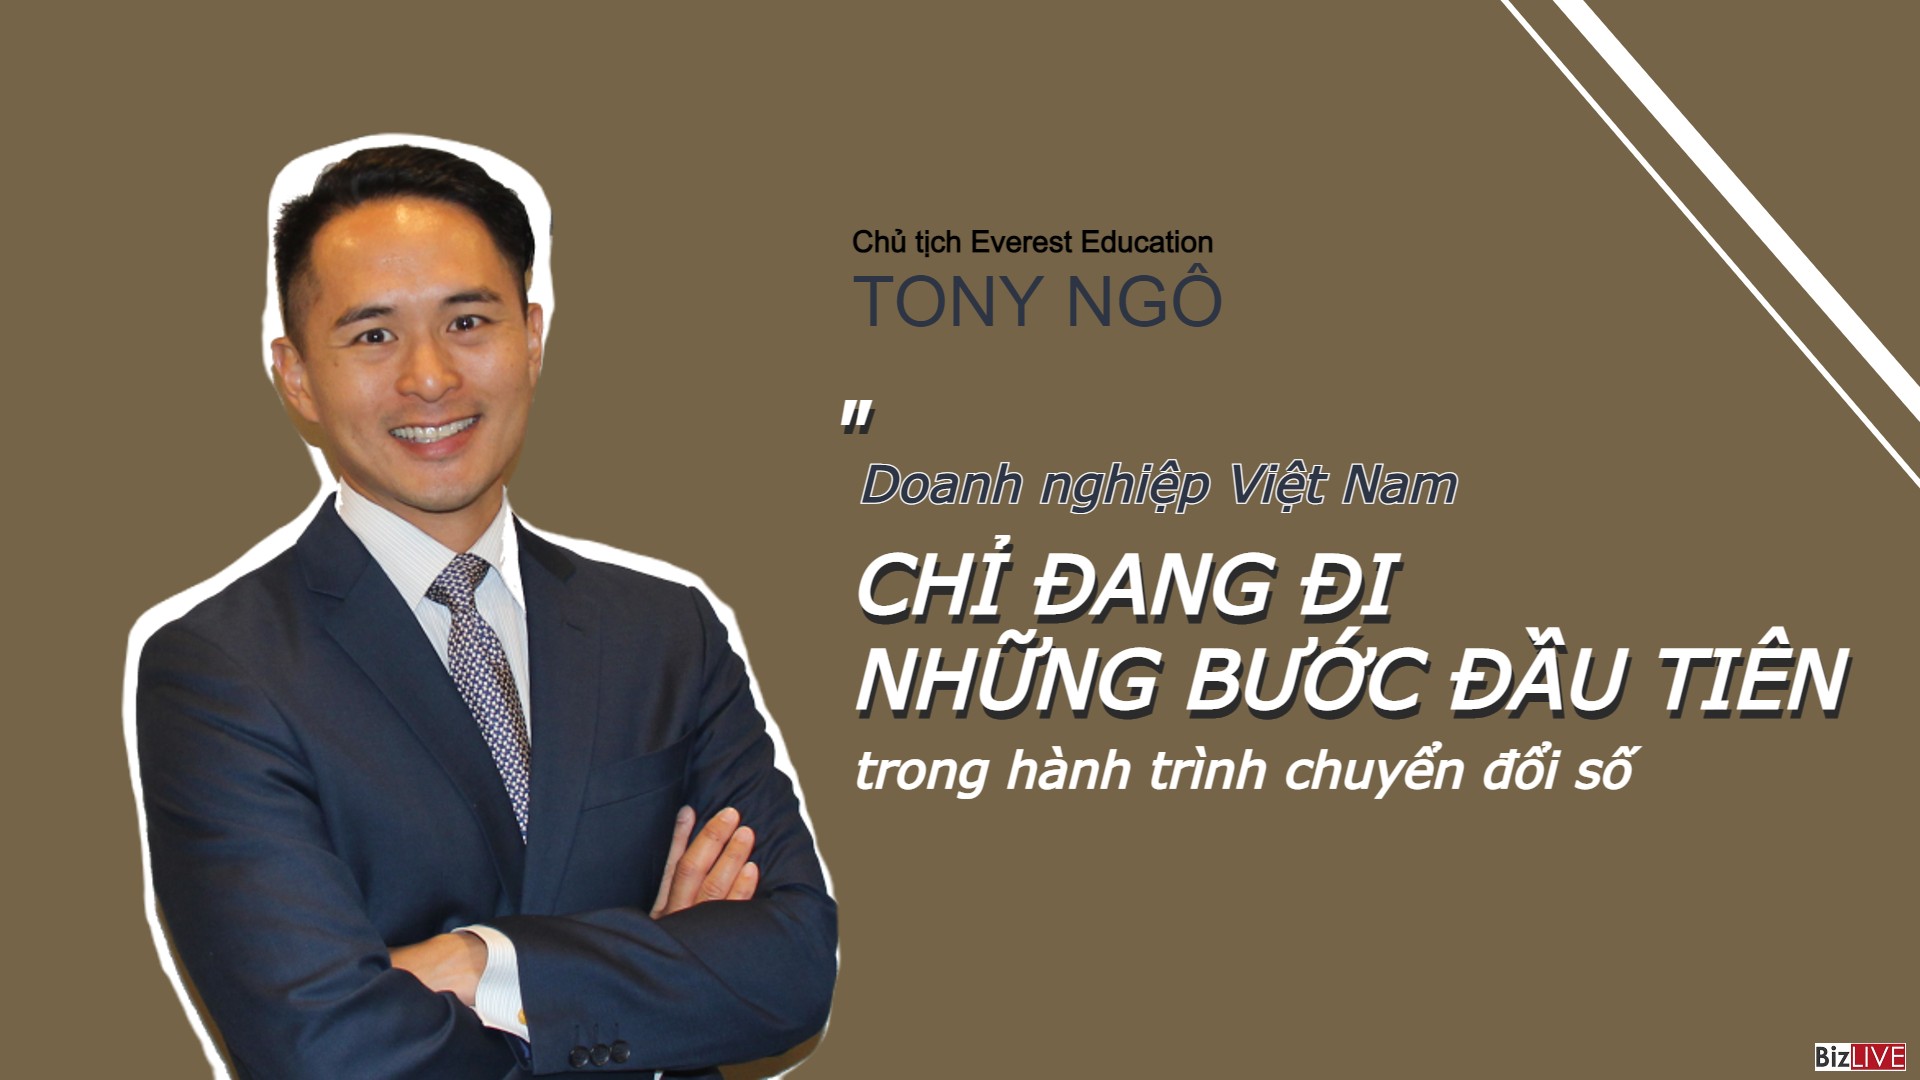 Chủ tịch Everest Education: Doanh nghiệp Việt Nam chỉ đang đi những bước đầu tiên trong hành trình chuyển đổi số